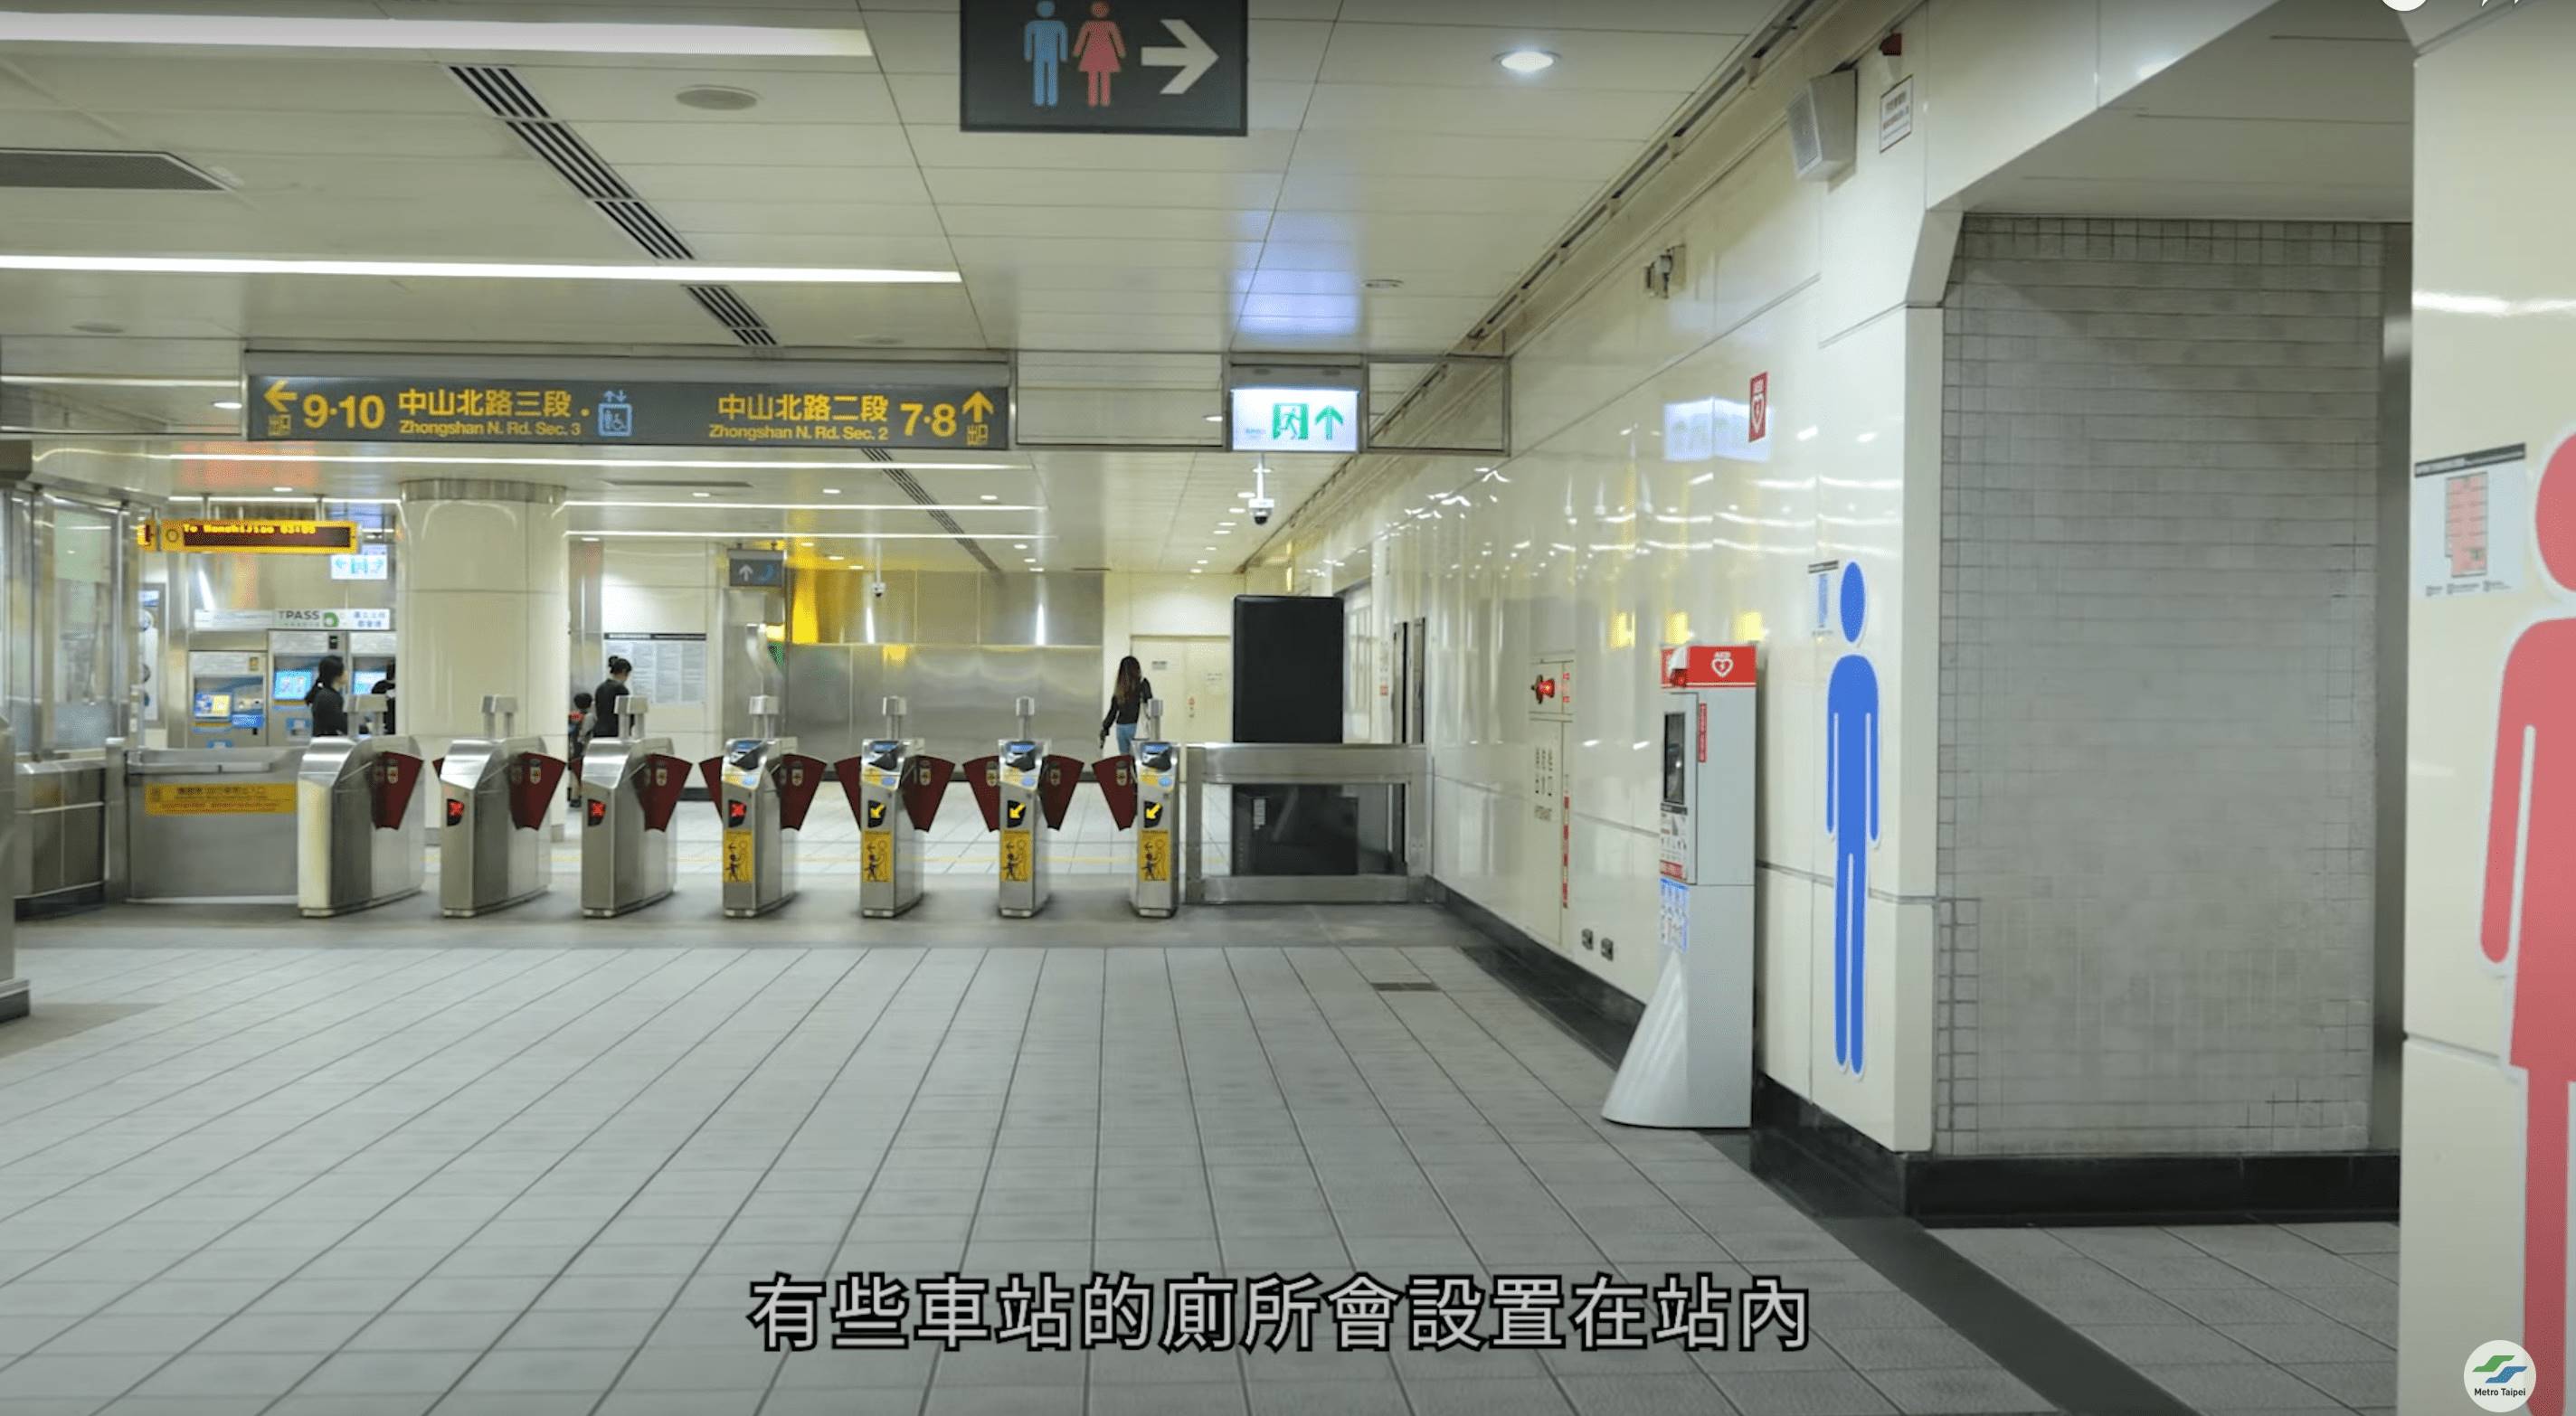 民眾沒搭車也可以至北捷詢問處借用臨時通行票到站內上廁所。